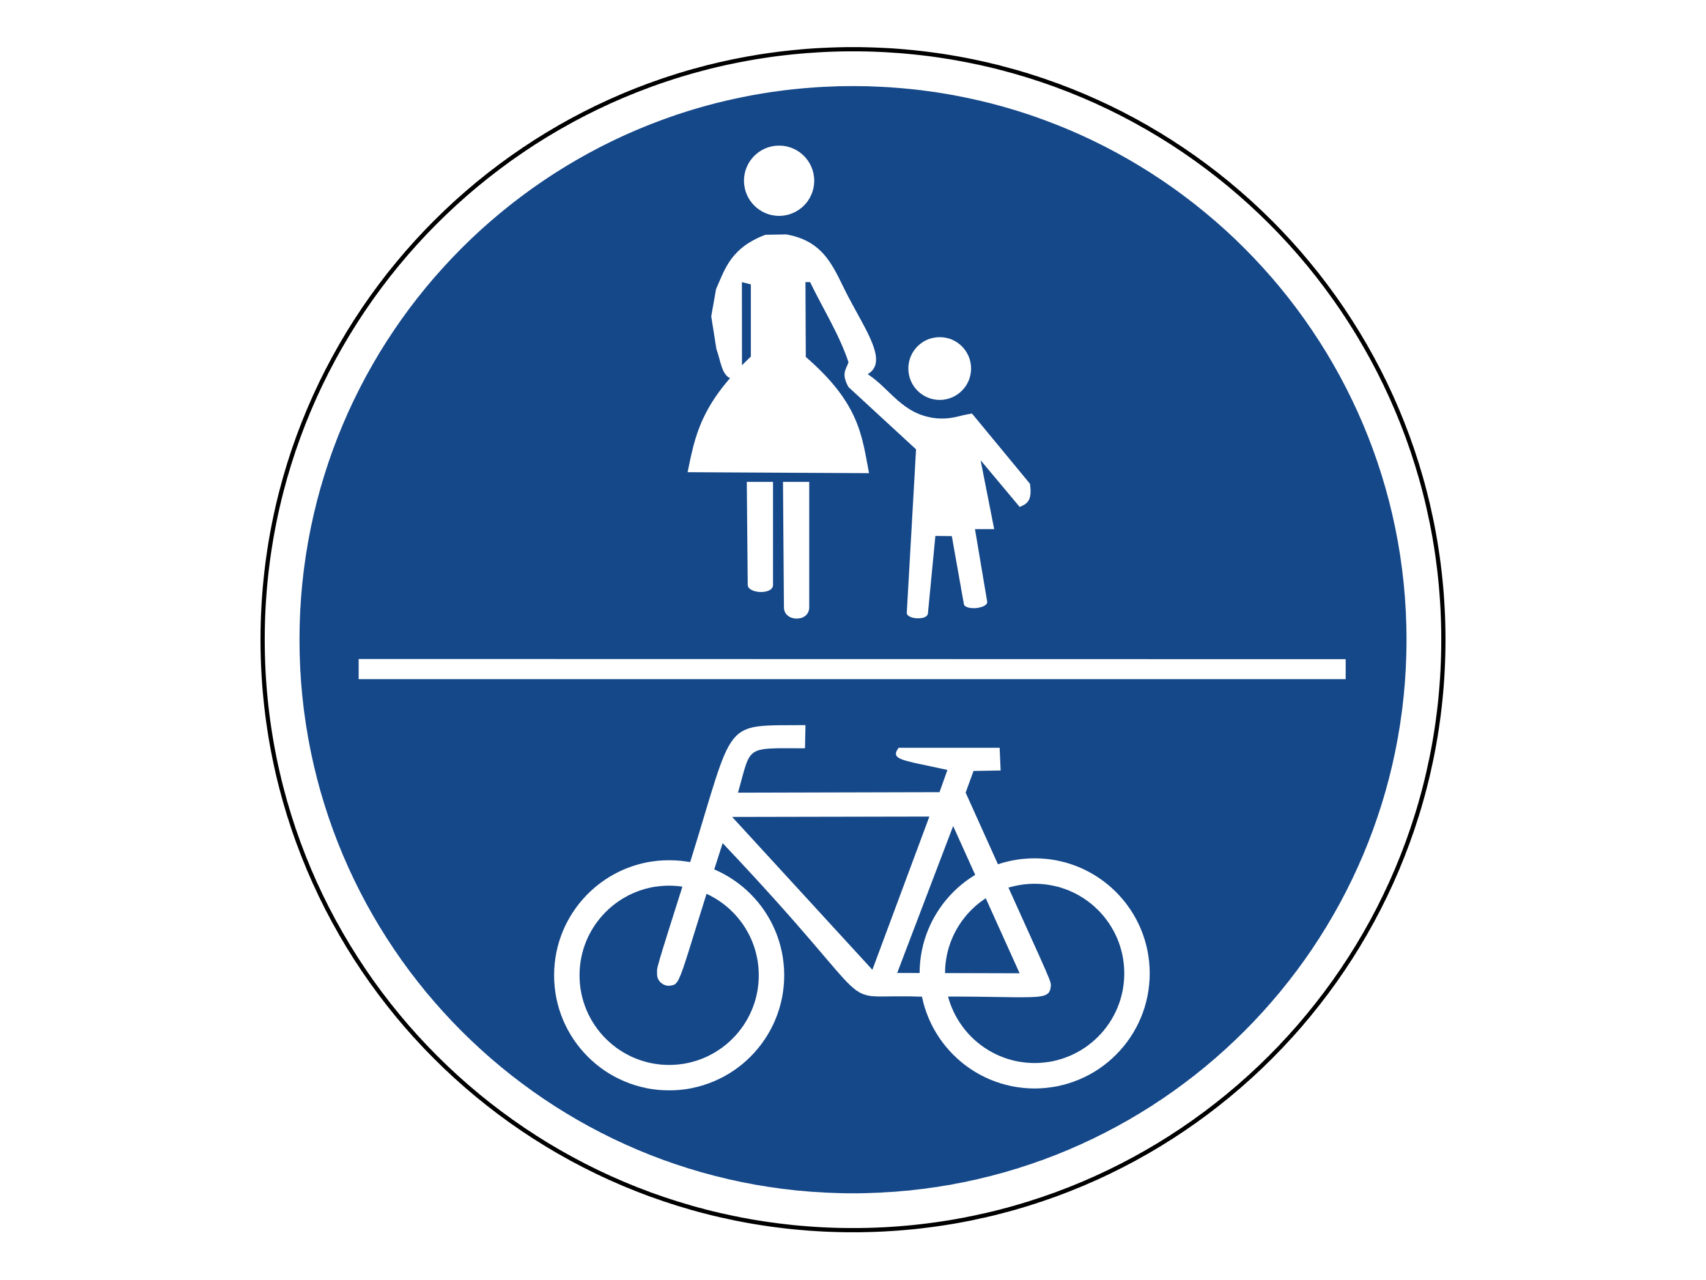 Ребенок велосипедная дорожка. Дорожные знаки для велосипедистов: "велосипедная дорожка". Знак велосипедная дорожка ПДД. Дорожный знак велосипед. Дорожные знаки для детей велосипедная дорожка.